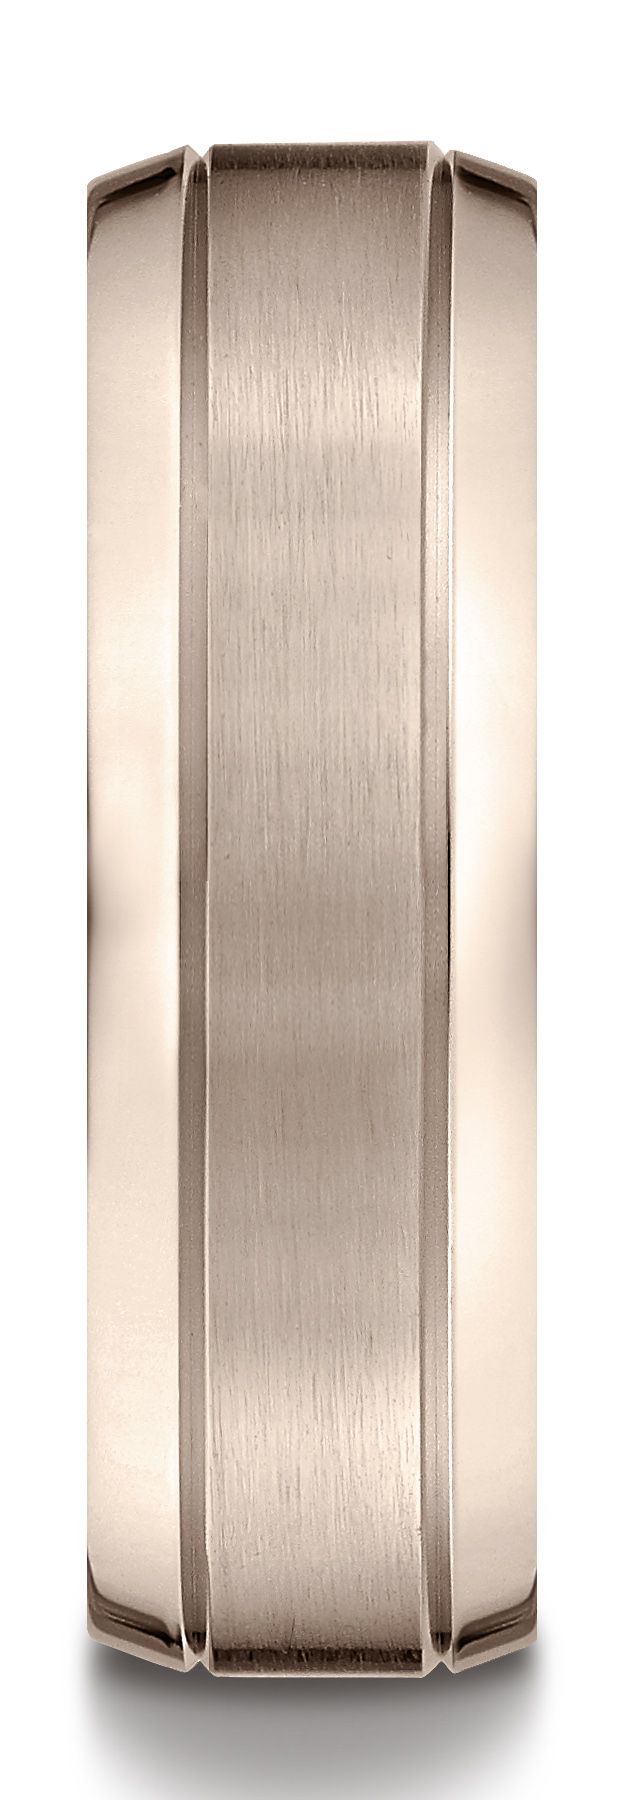 14k Rose Gold 7mm Comfort-fit Satin-finished High Polished Beveled Edge Carved Design Band